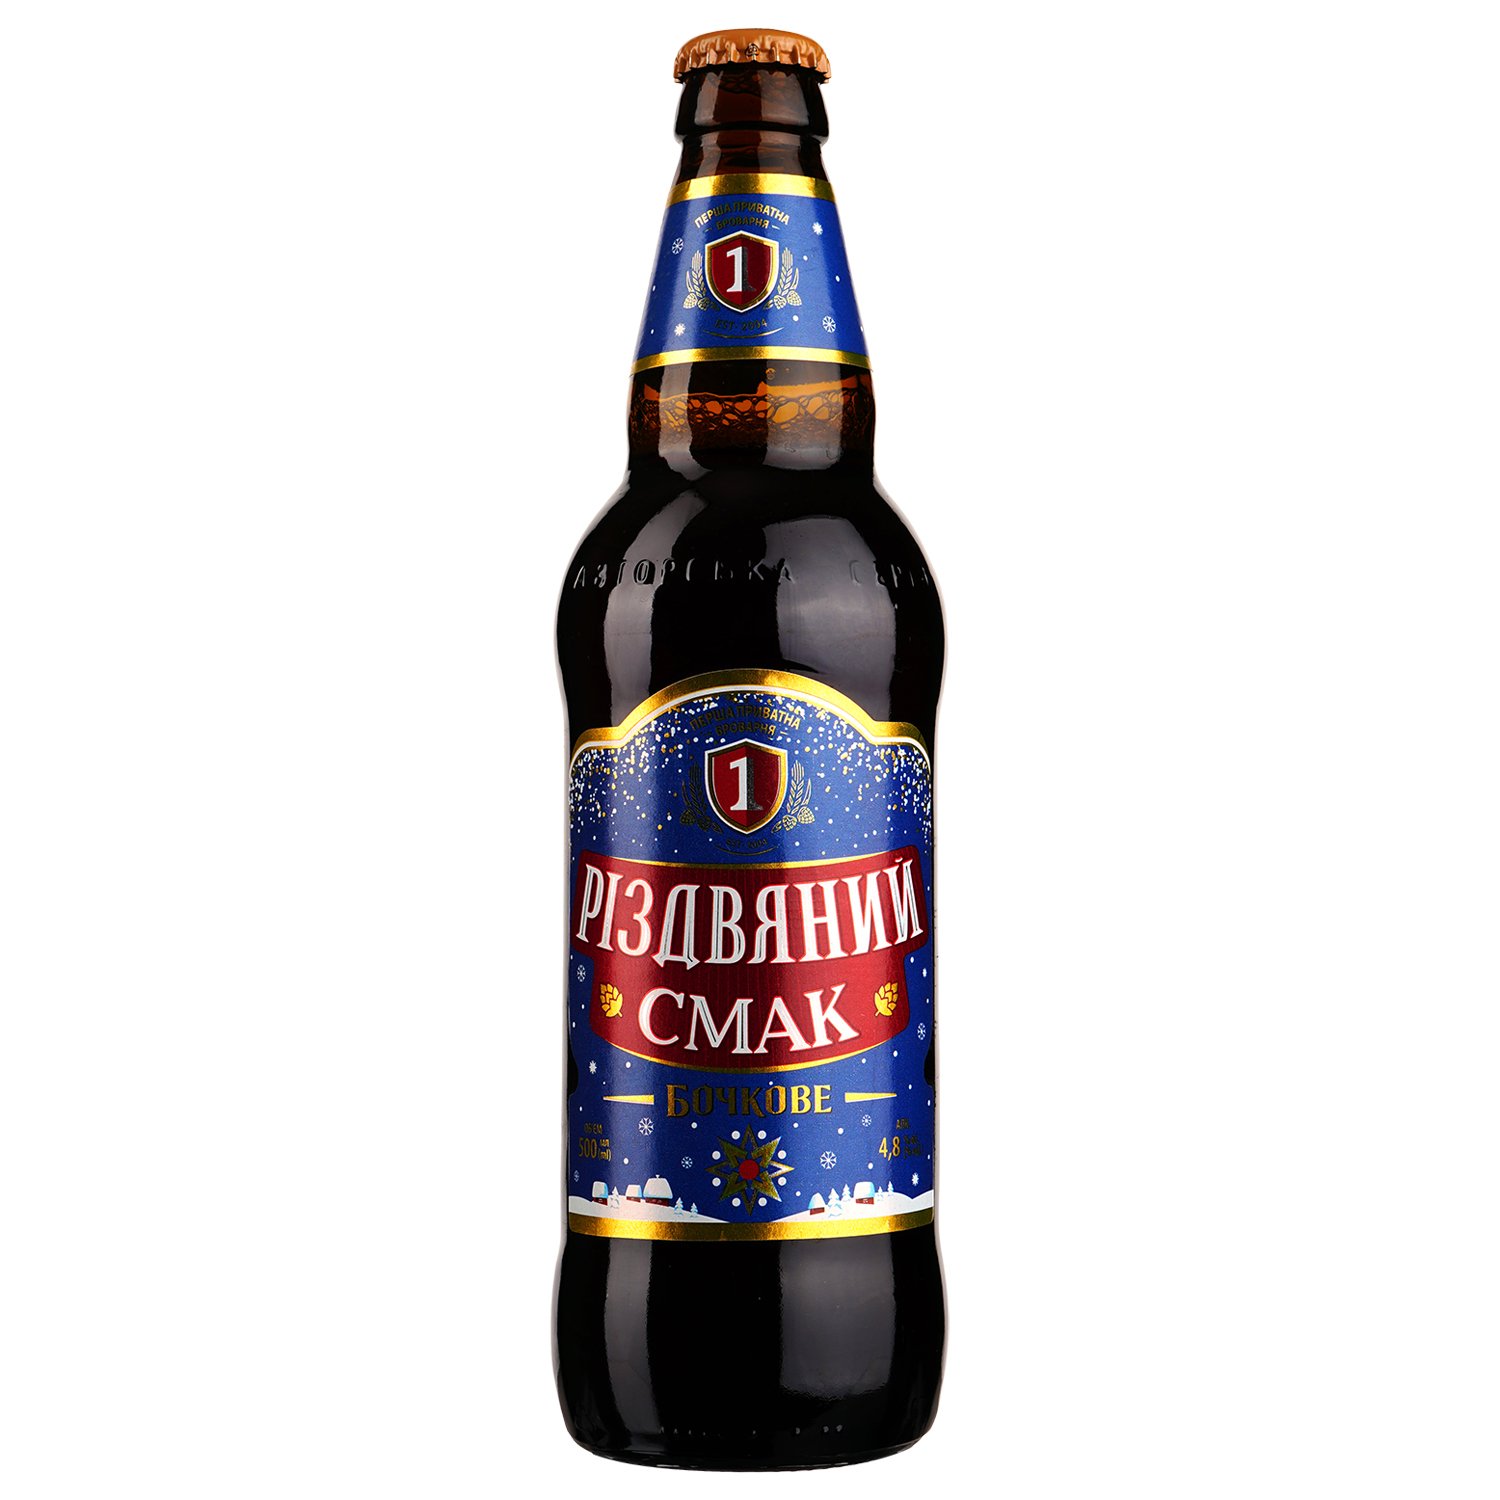 Пиво Перша Приватна Броварня Бочковое Рождественский вкус, темное, 4,8%, 0,5 л - фото 1